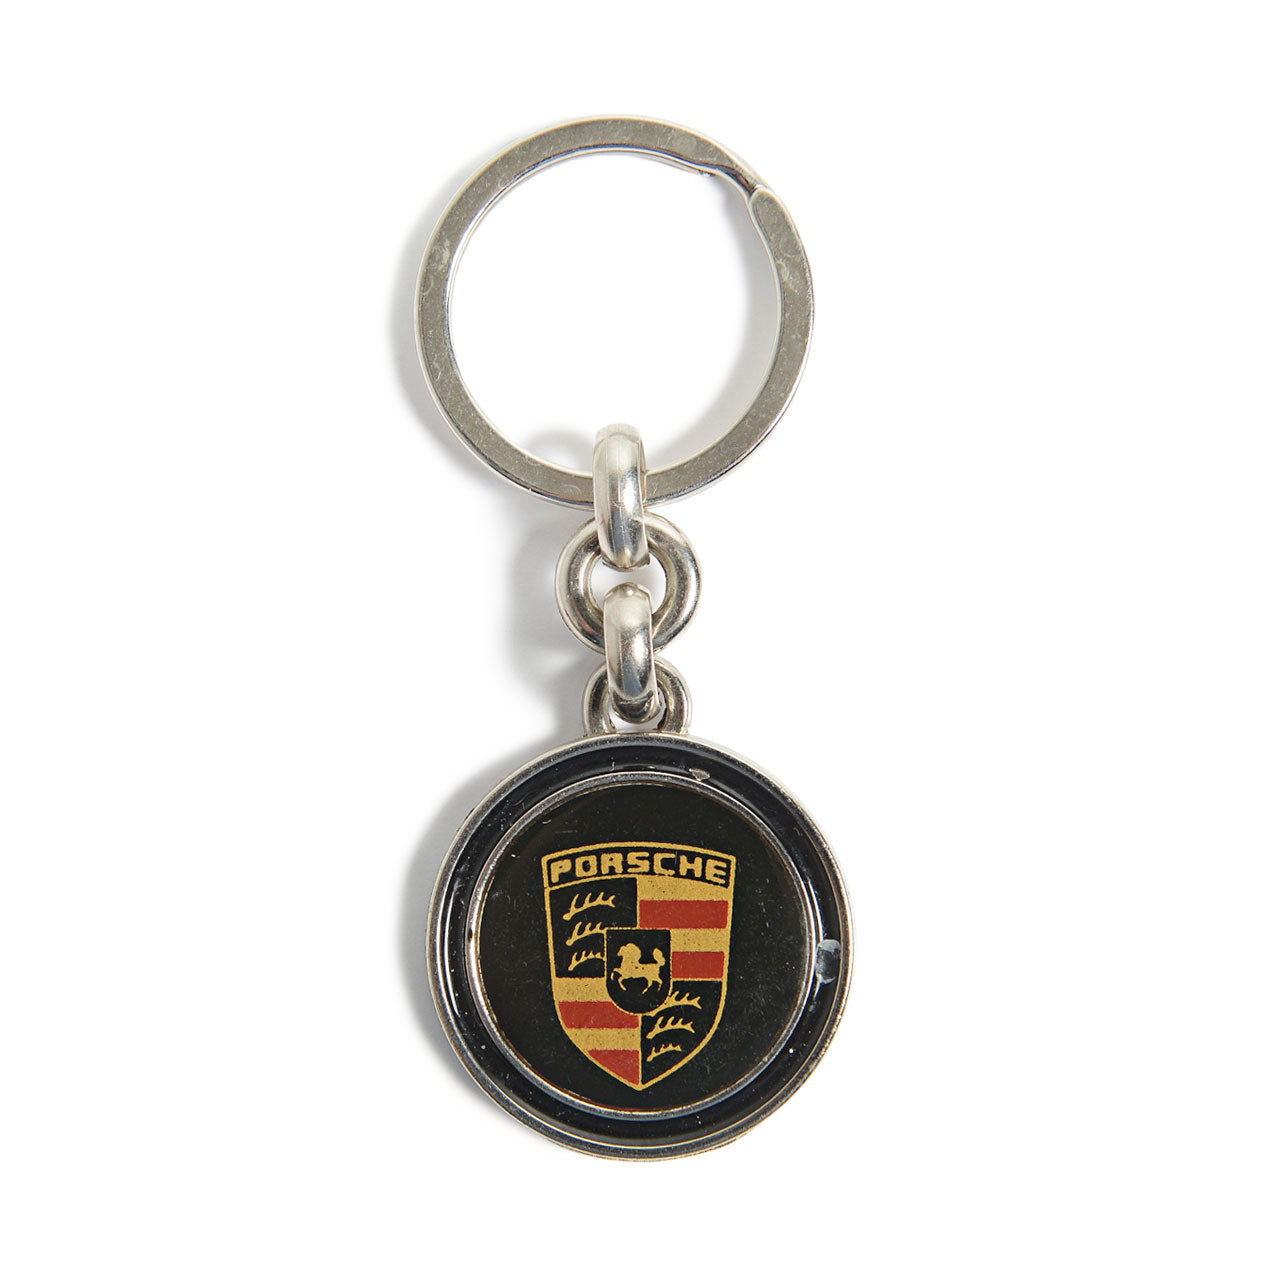 Mr. Cupps x Uncrate Small Black Porsche Keychain